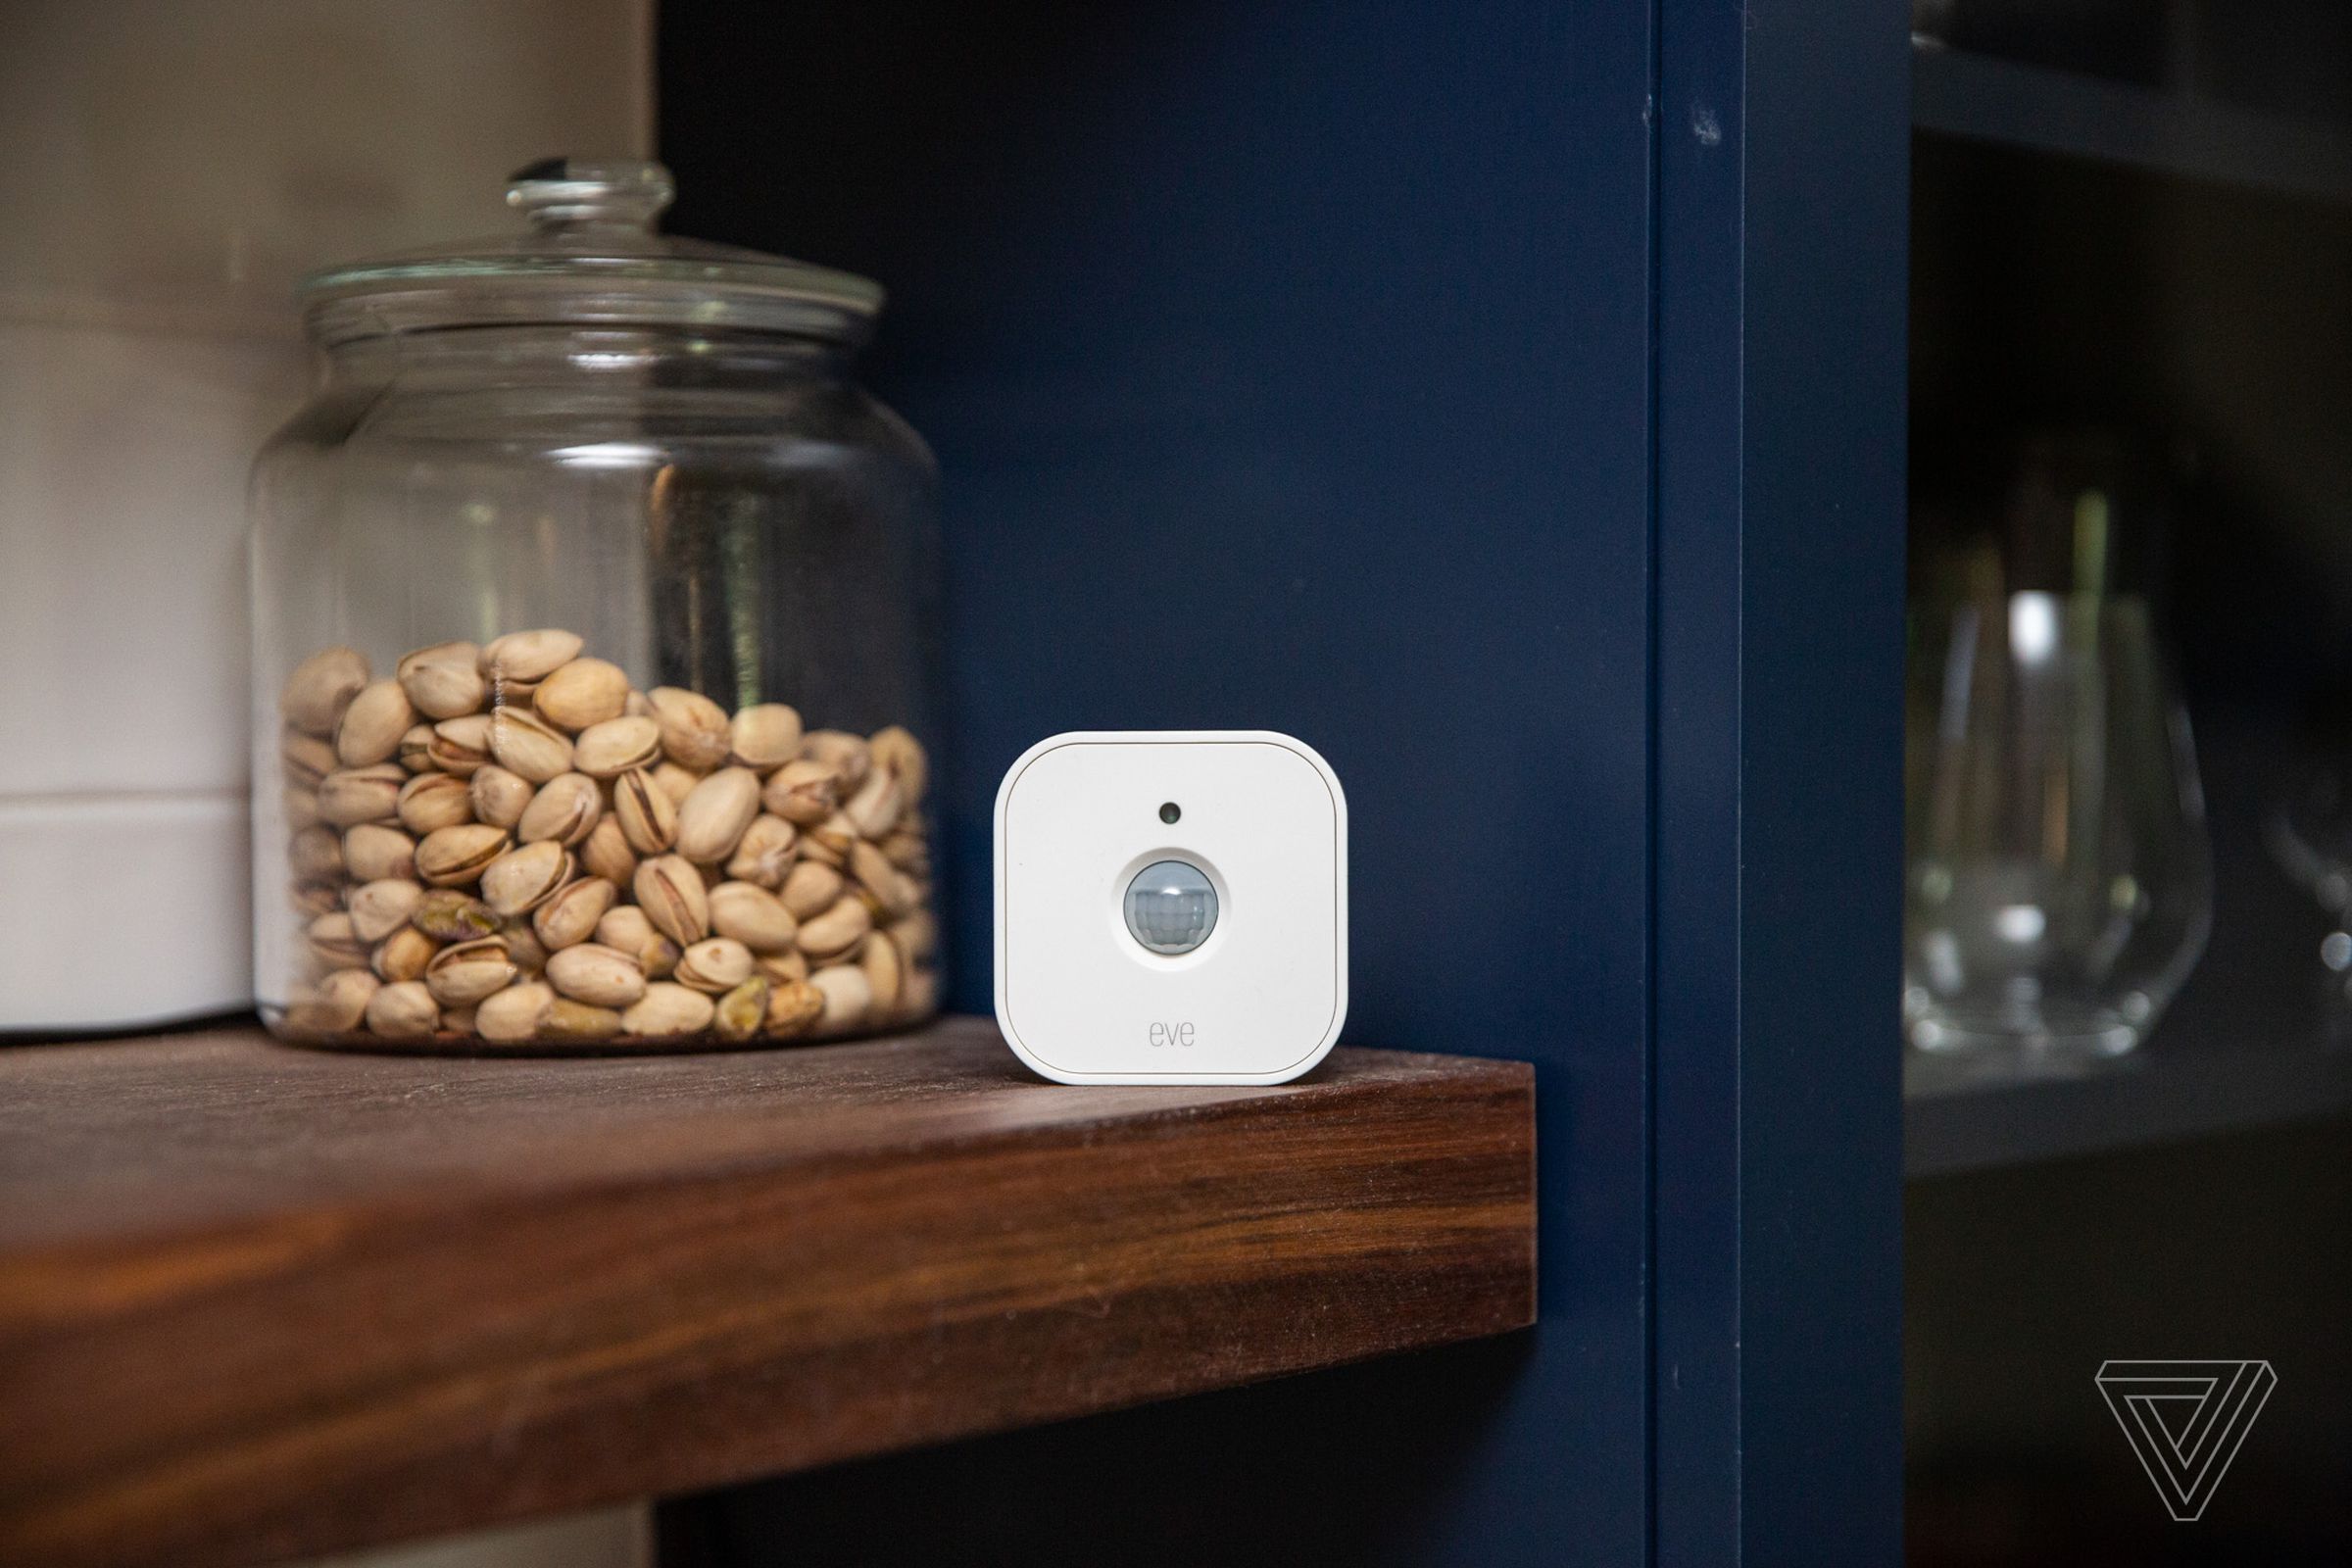 A white motion sensor on a shelf in a kitchen.